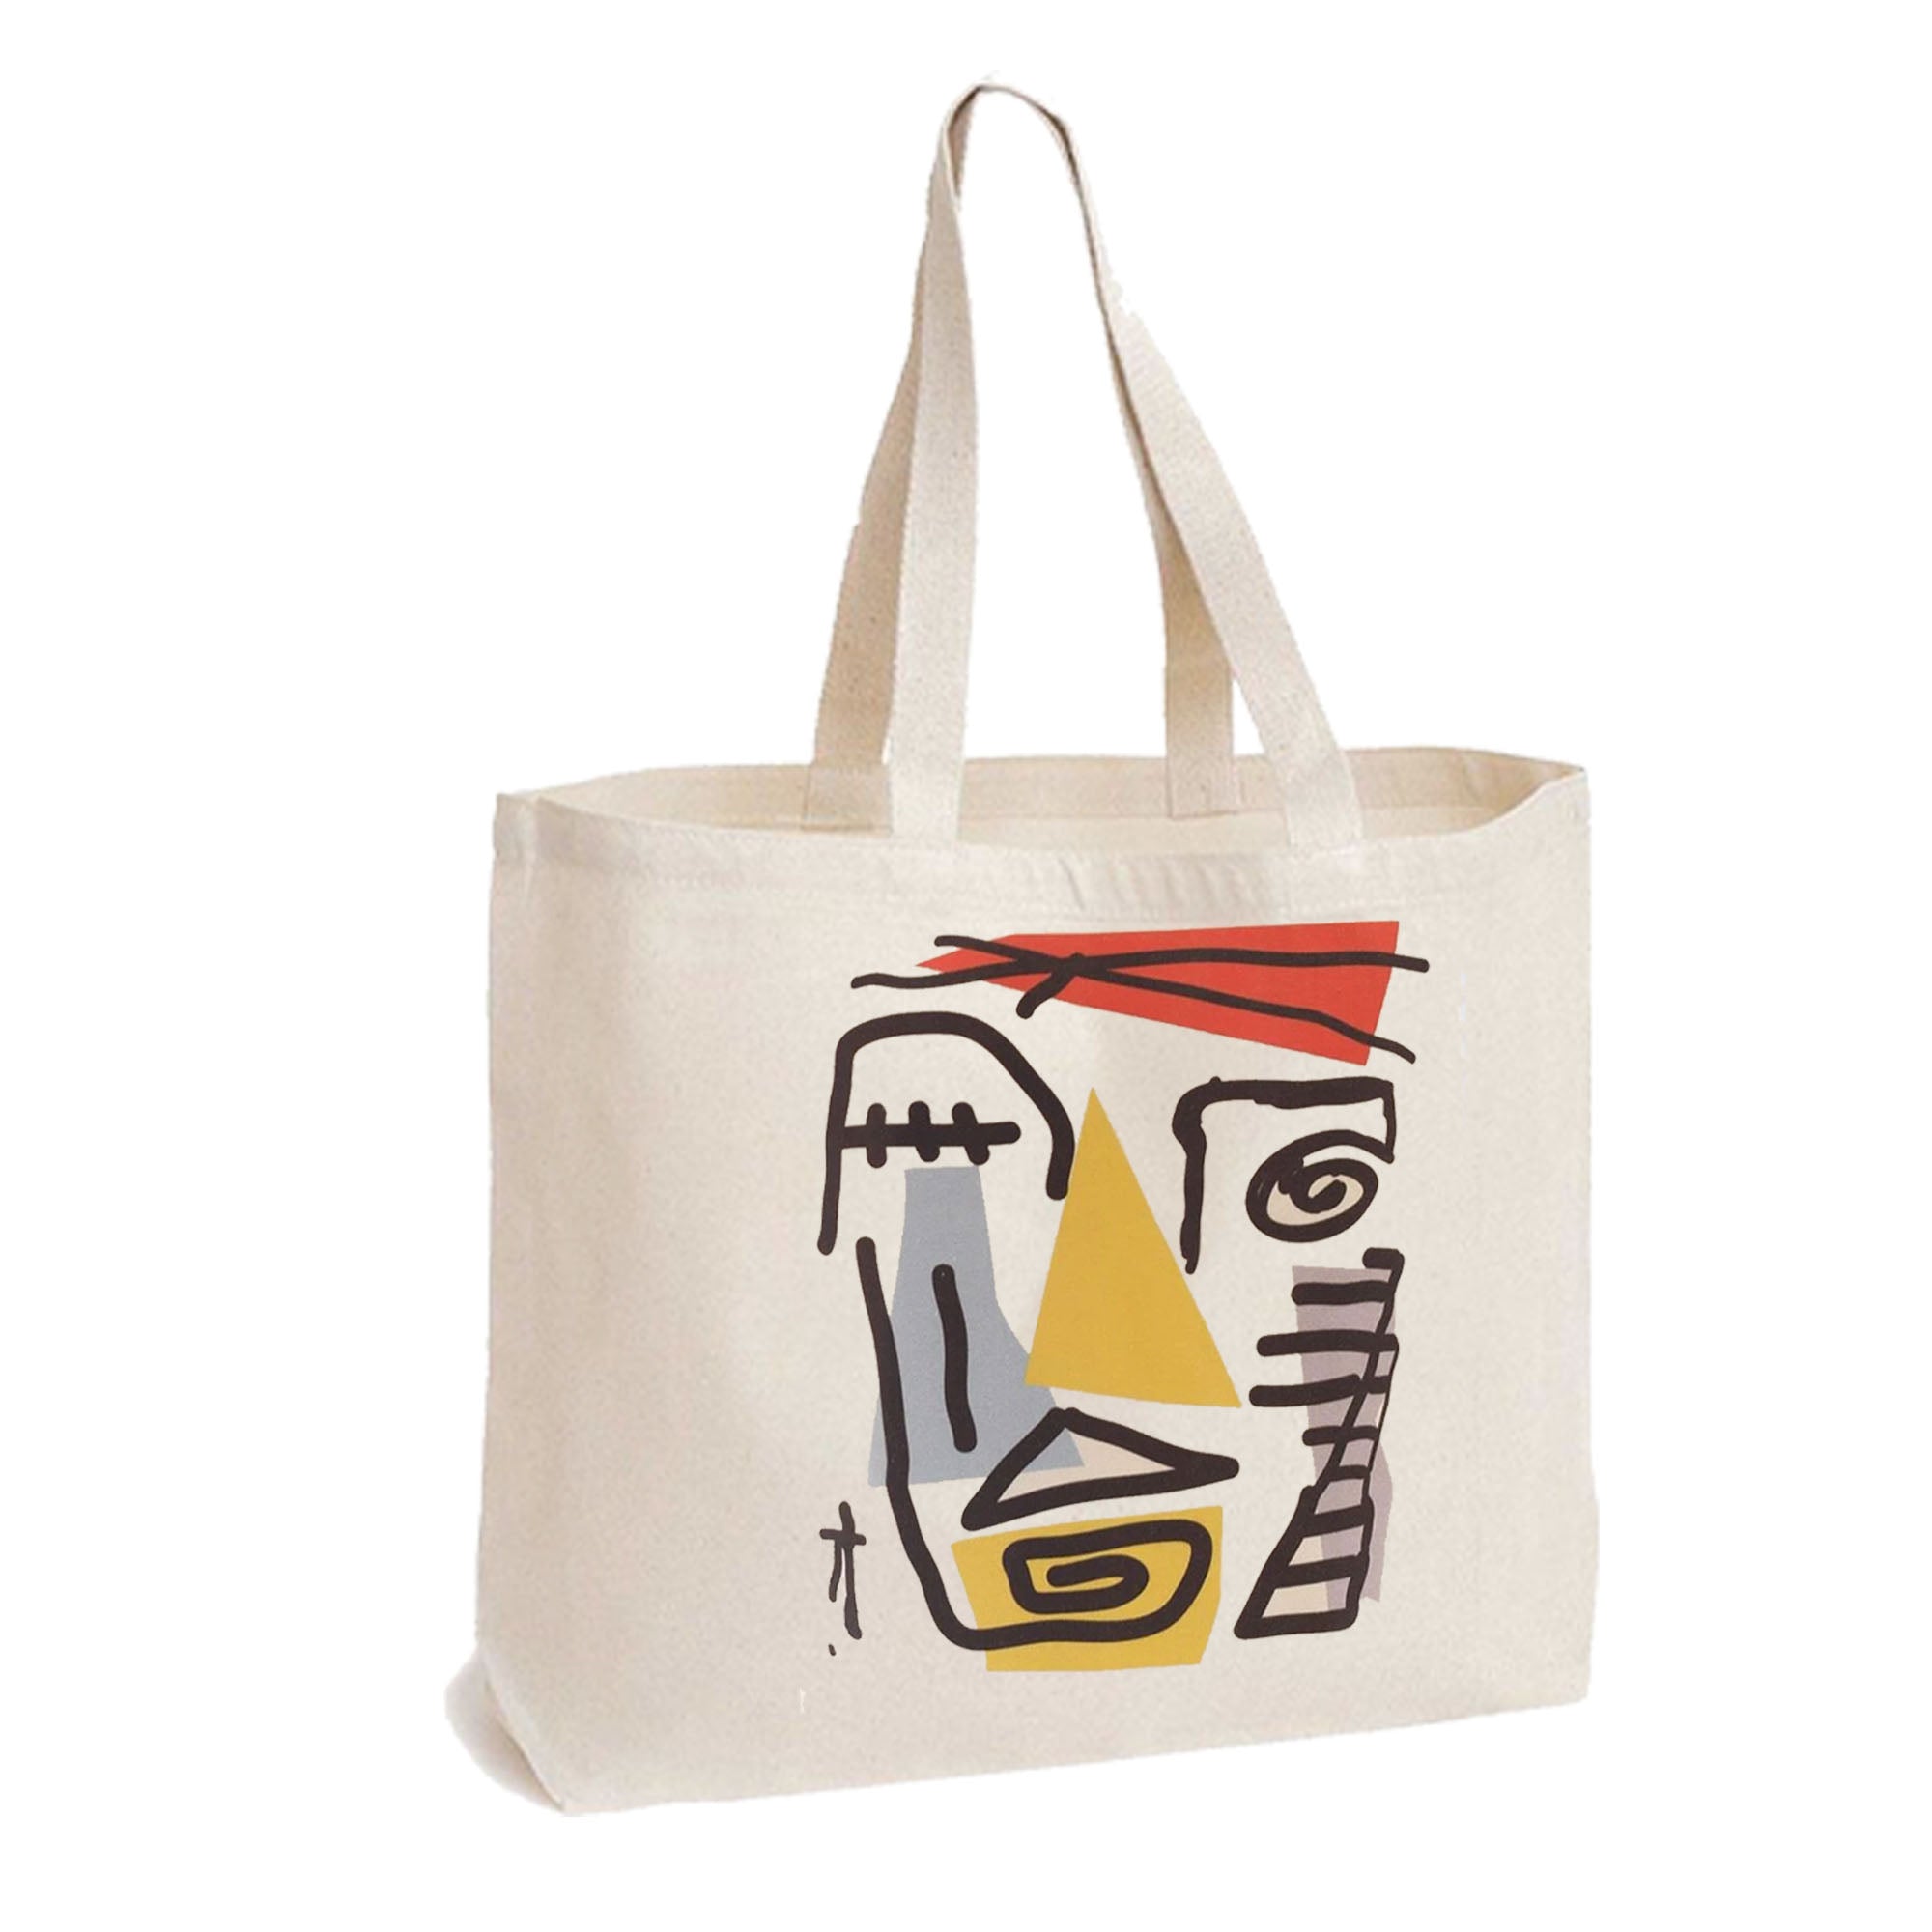 Bolsa de compras de lona reutilizable ecológica - Diseño estilo Picasso